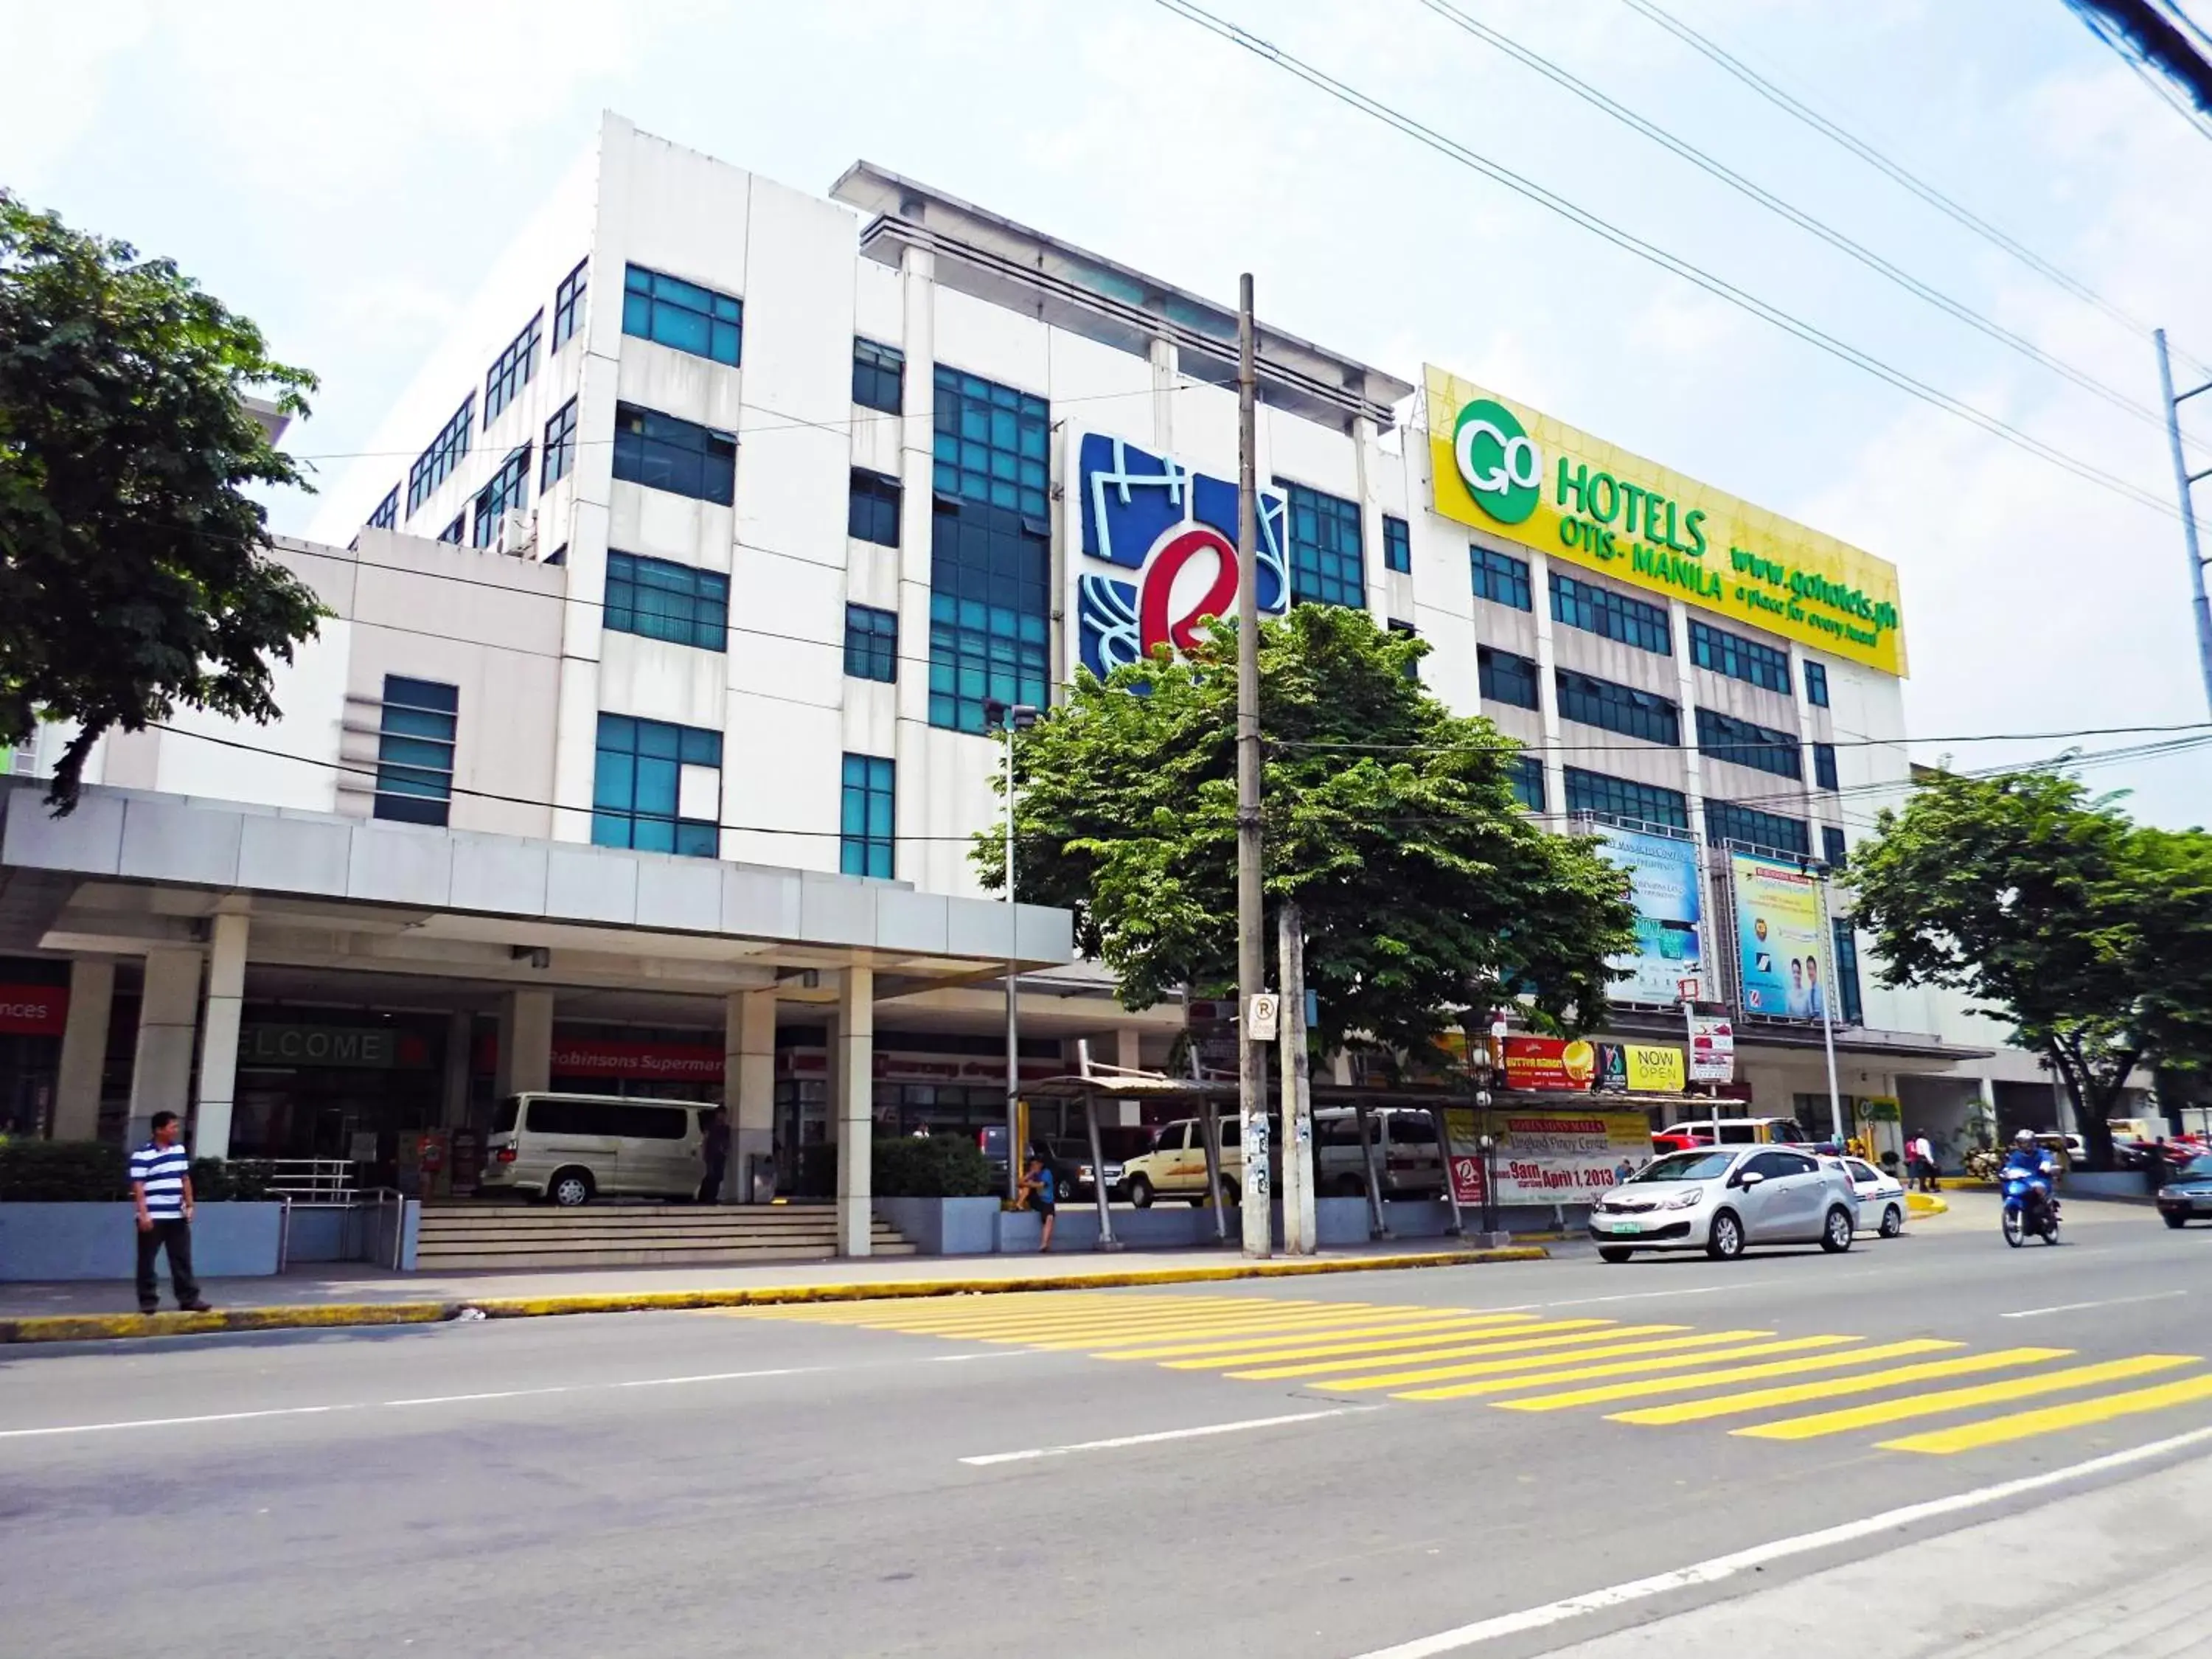 Facade/entrance, Property Building in Go Hotels Otis - Manila